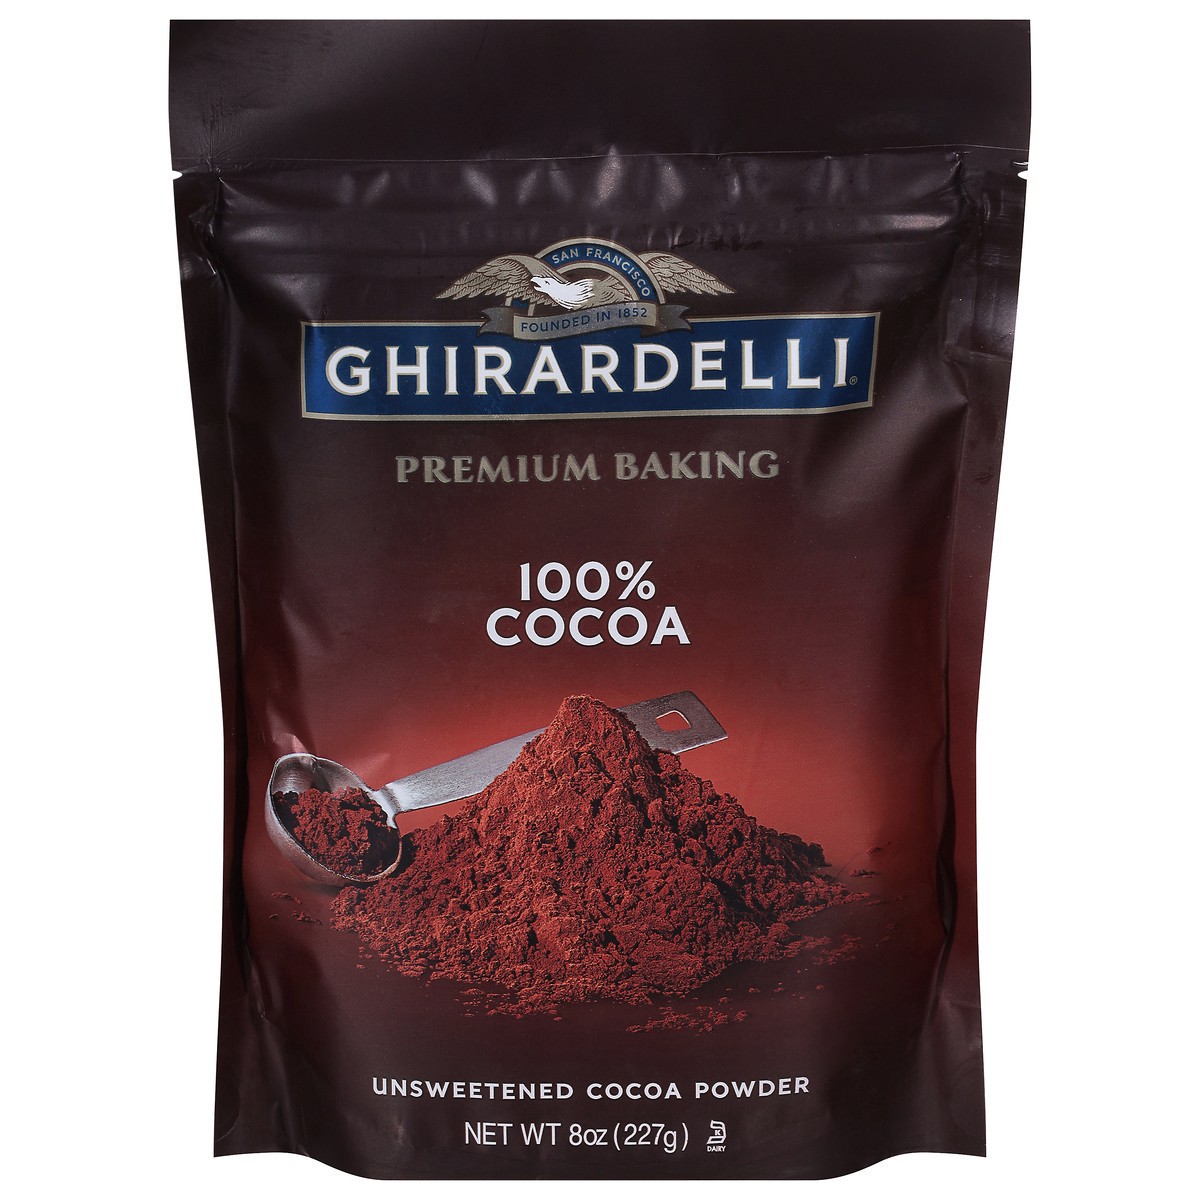 slide 1 of 9, GHIRARDELLI Premium Baking Cocoa 100% Unsweetened Cocoa Powder, 8 oz Bag, 8 oz